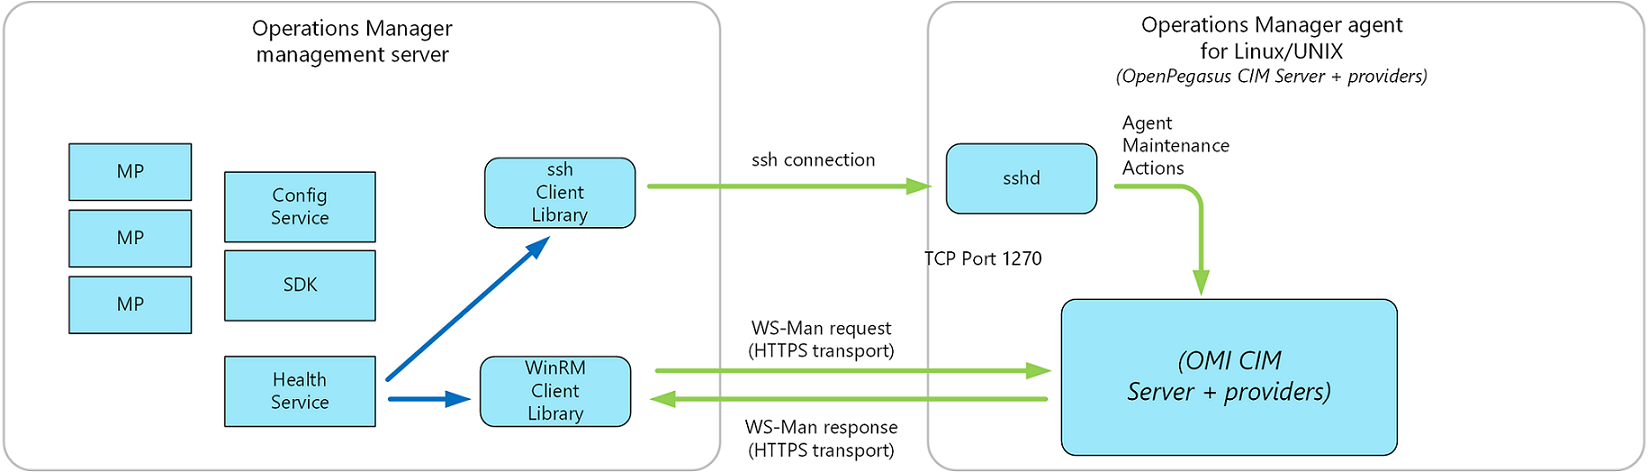 Diagrama da Arquitetura de Software Atualizada do Agente UNIX/Linux do Operations Manager.